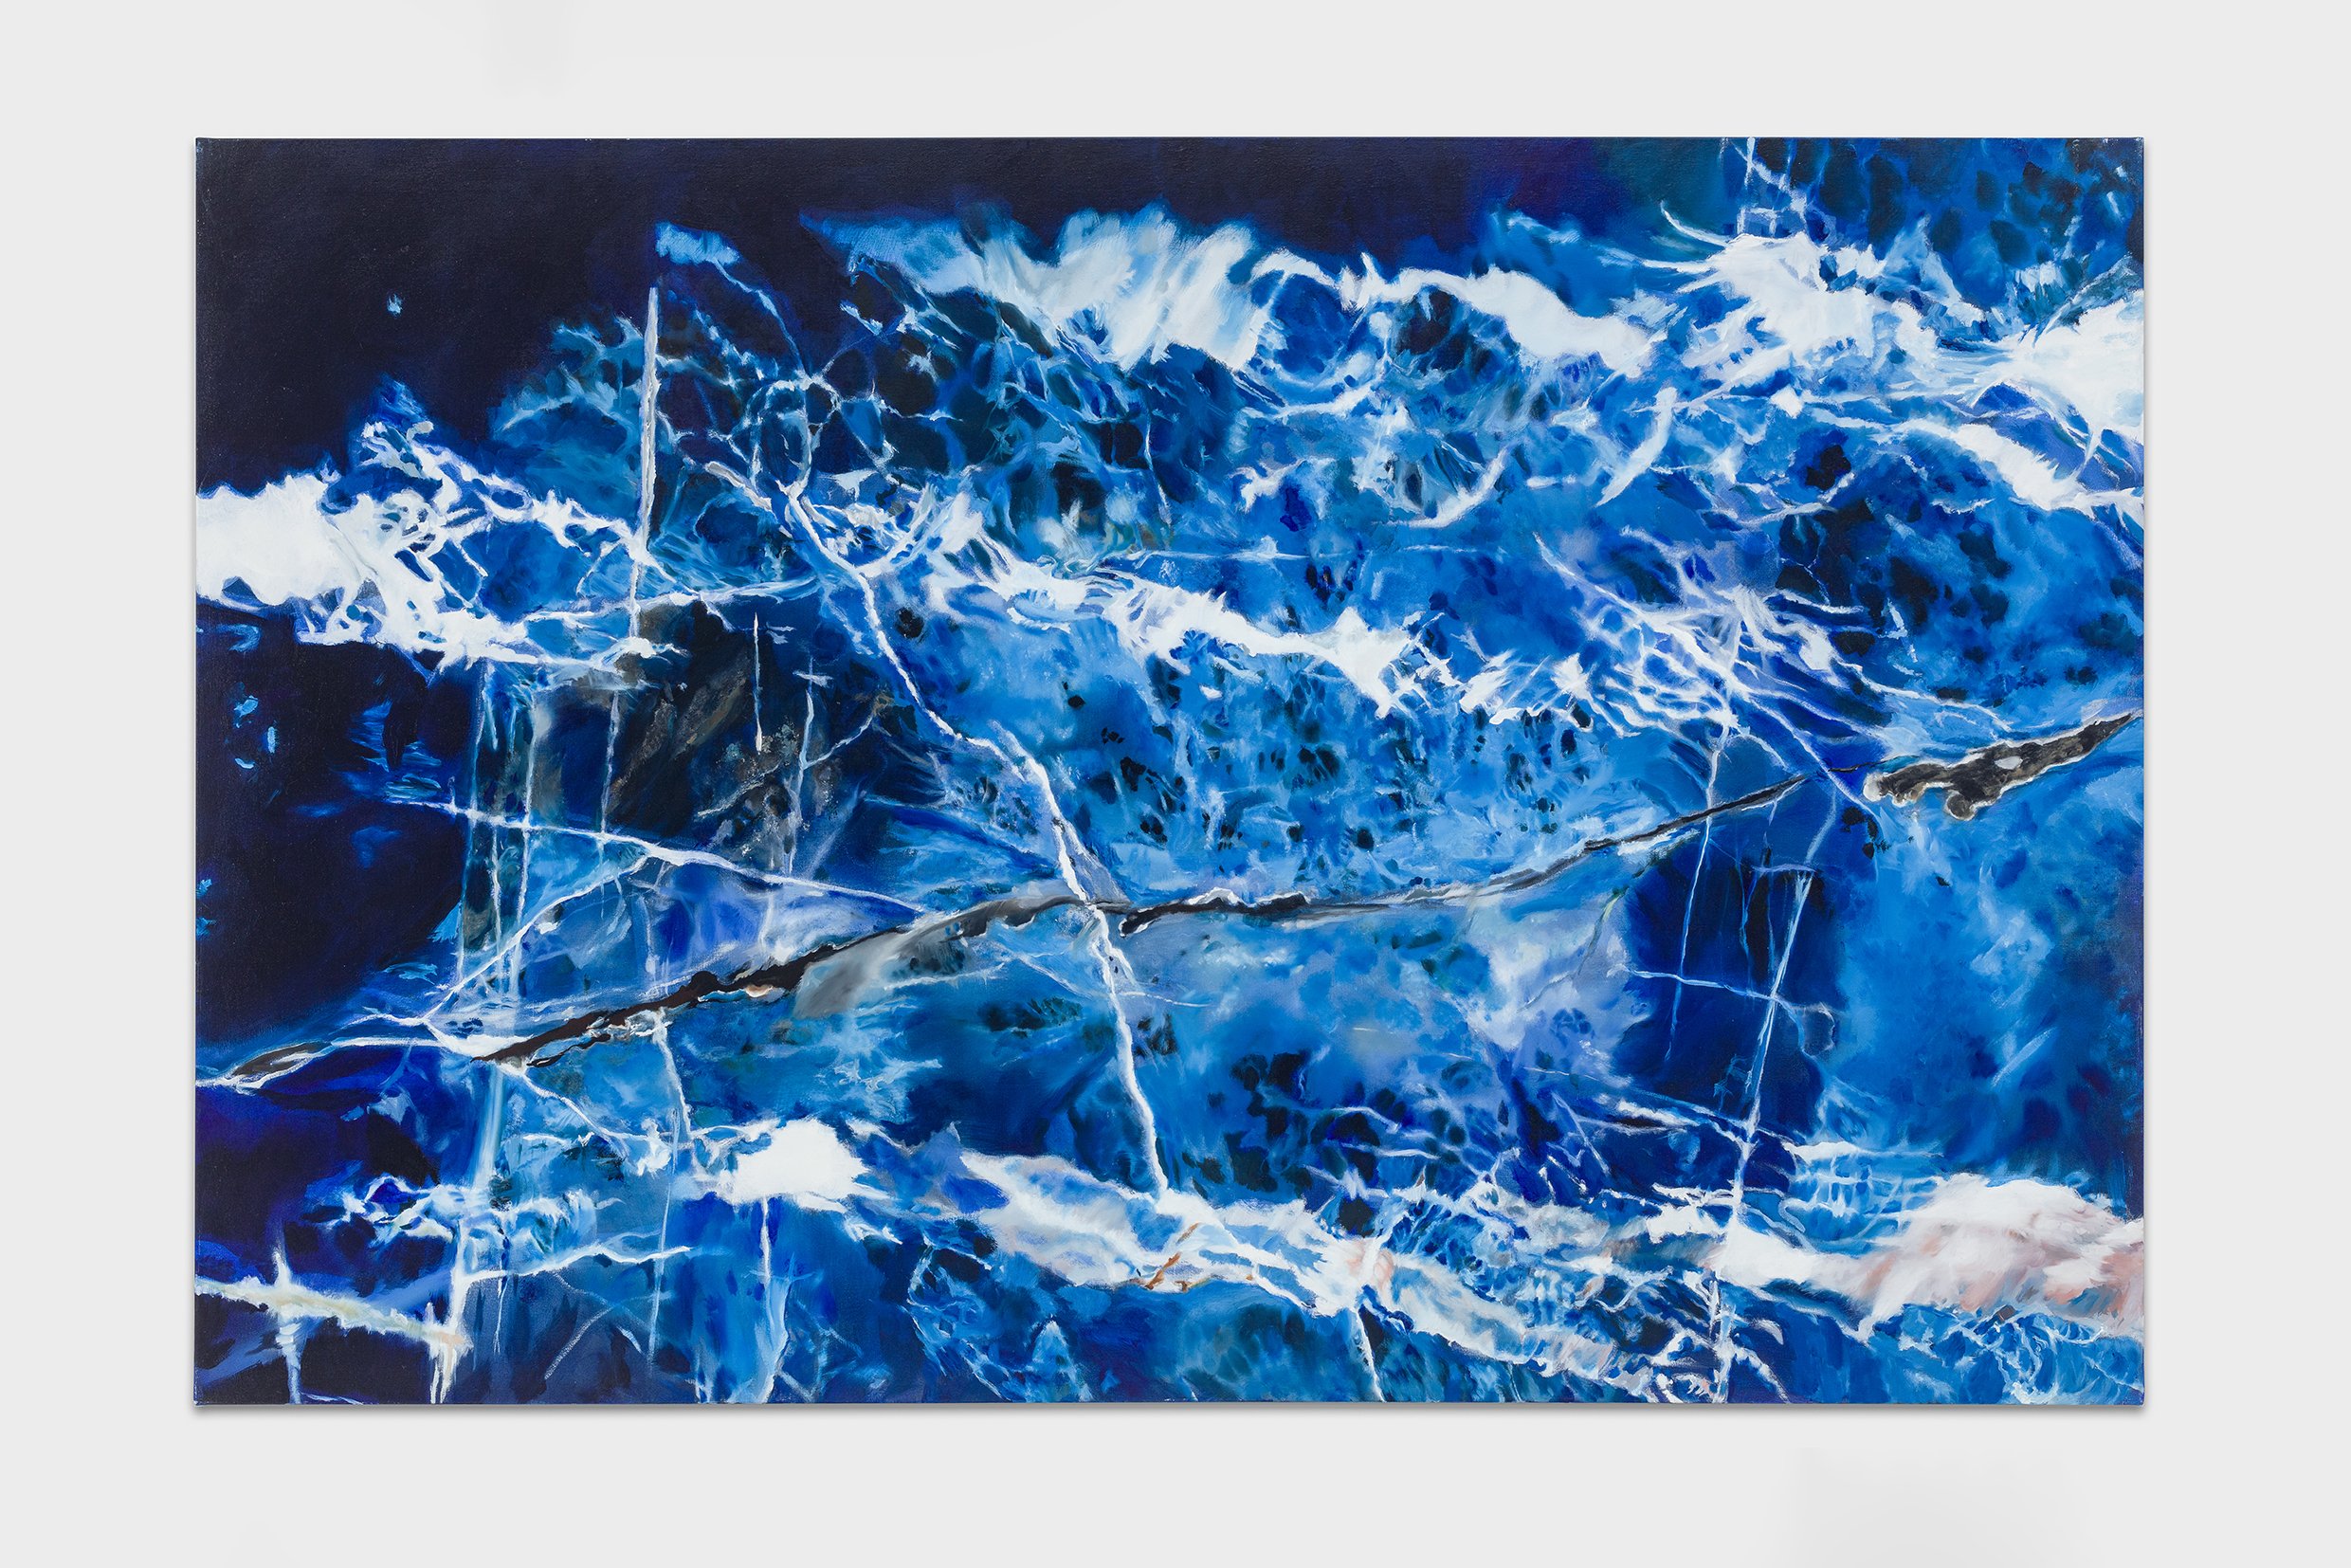 Hong Zeiss OT (Onyx), 2018 Öl auf Leinwand 130 x 200 cm Kunstdokumentationcom 2018 LOW.jpg